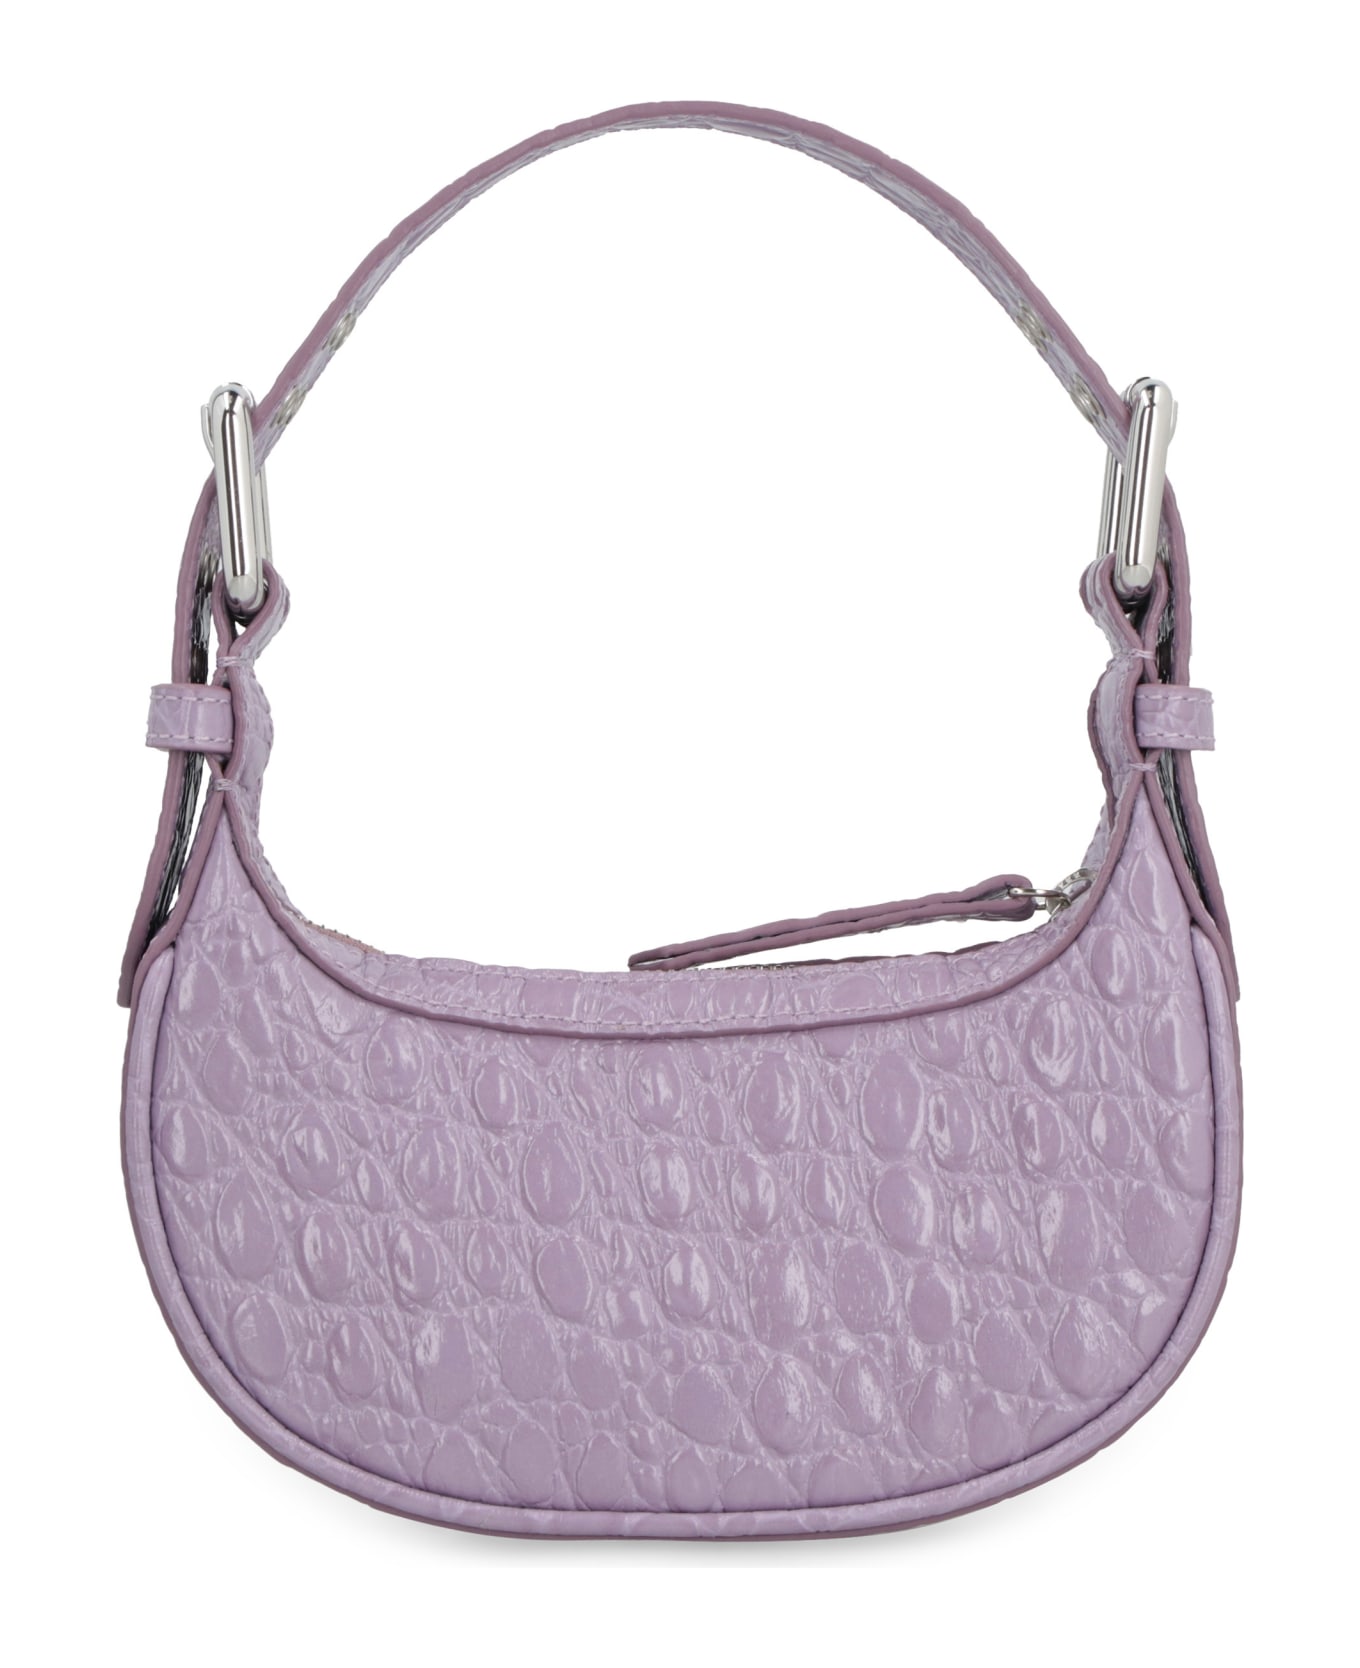 BY FAR Mini Soho Handbag - Lilac